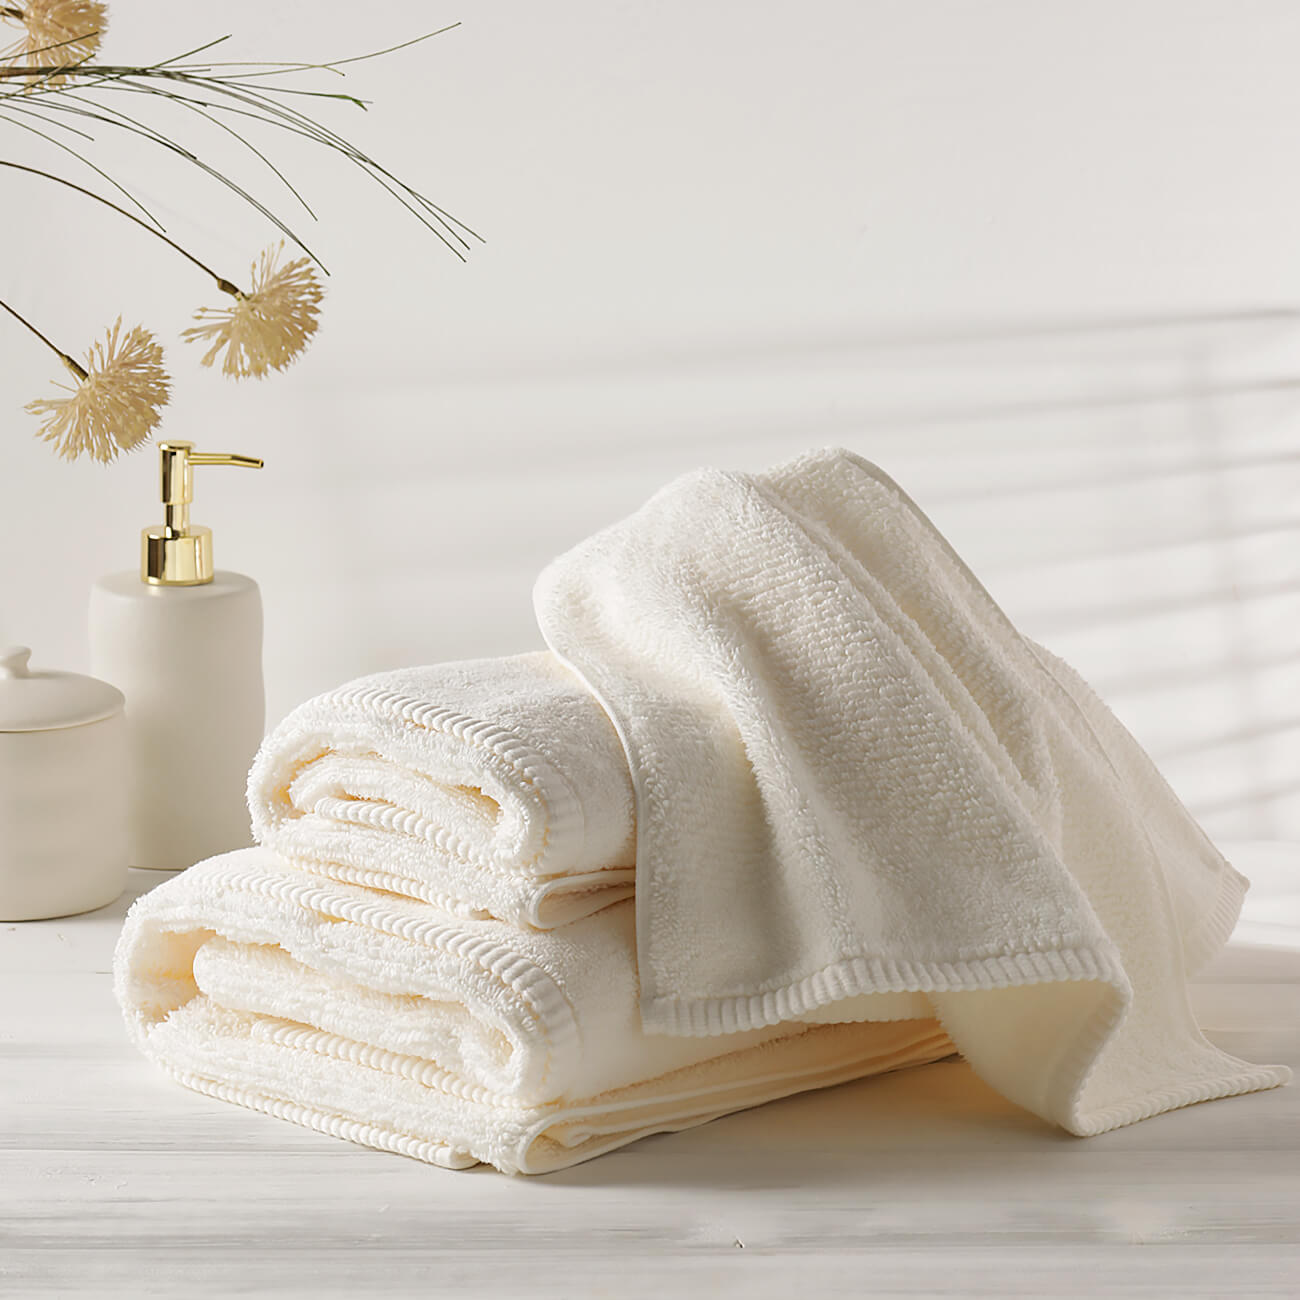 Полотенце, 50х90 см, хлопок, белое, Terry cotton набор подарочный этель spring полотенце и аксессуары